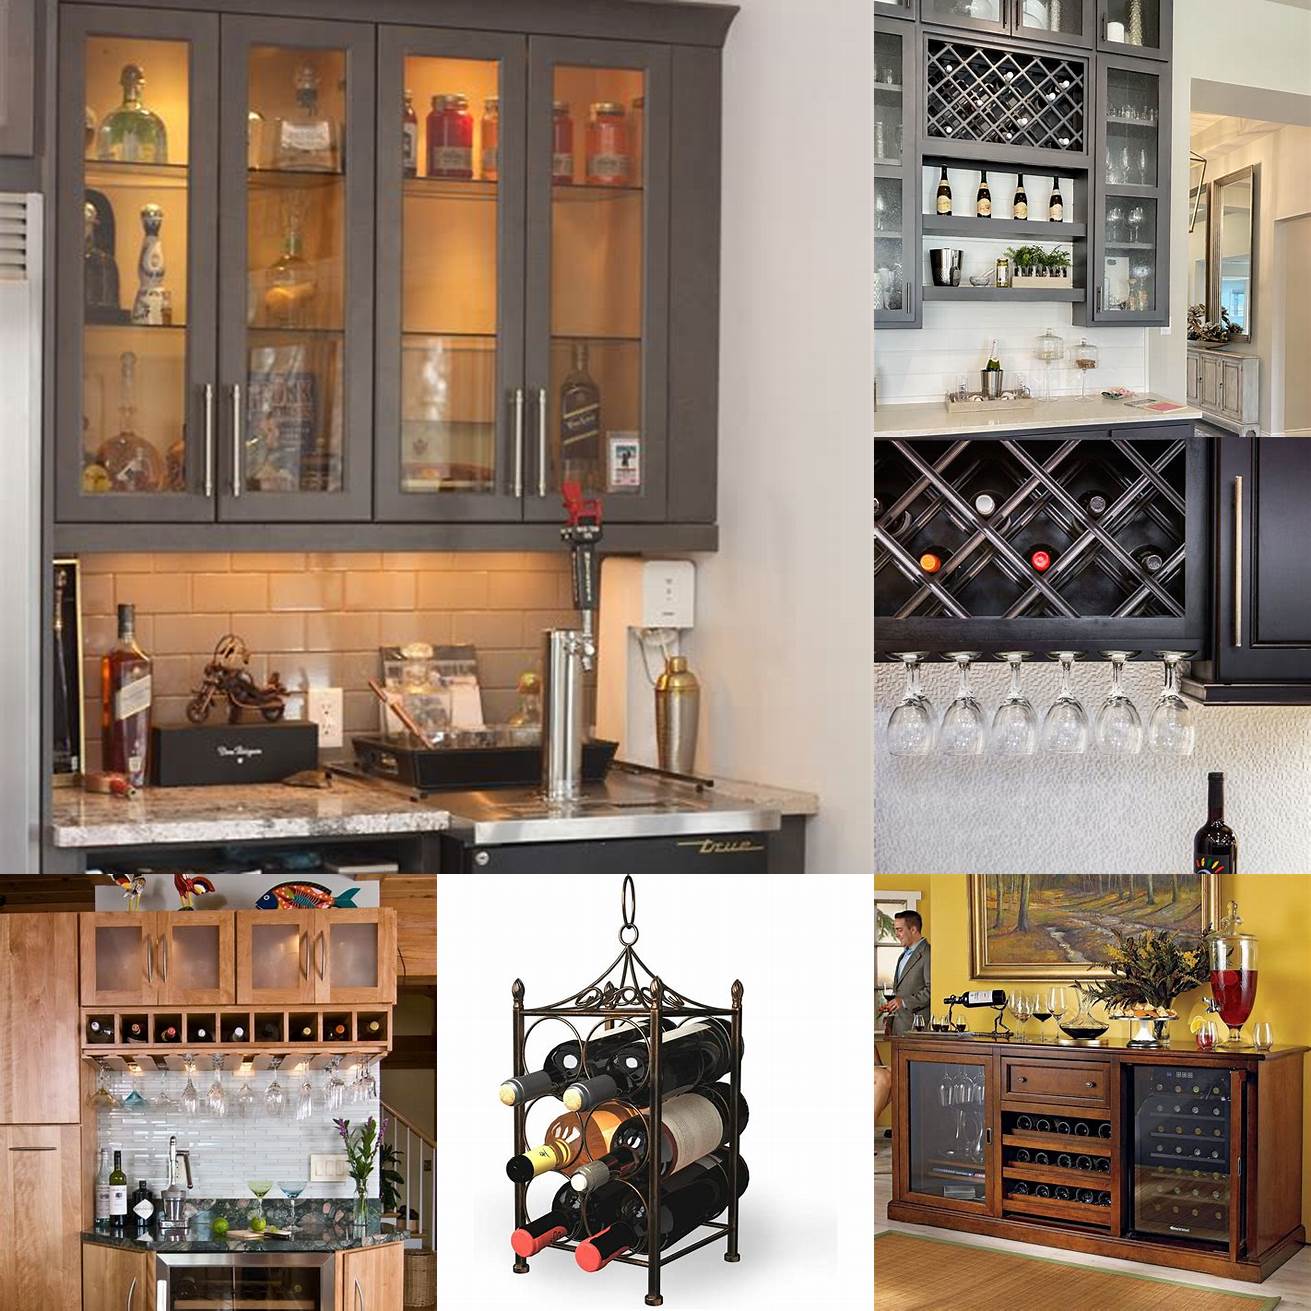 Image Idea 3 Countertop wine cabinet in a retro style